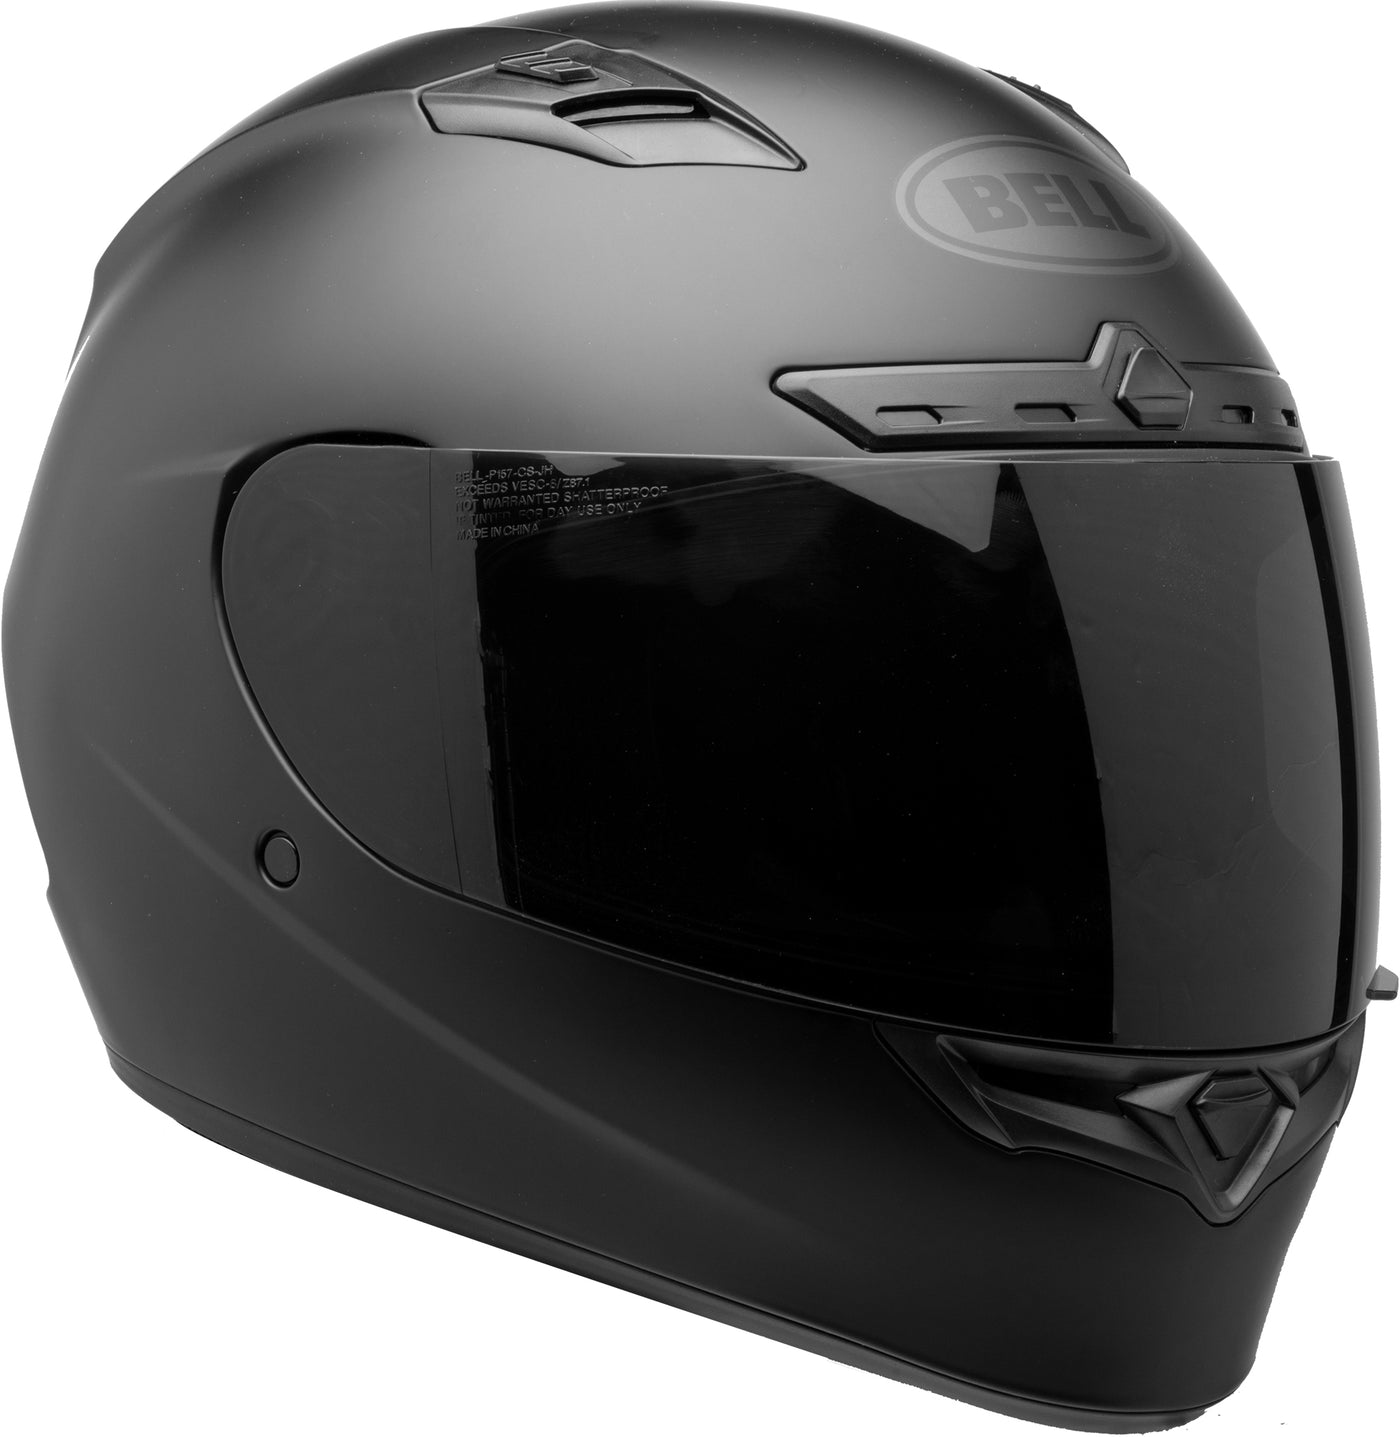 Bell Helmets Qualifier DLX - Matte Black